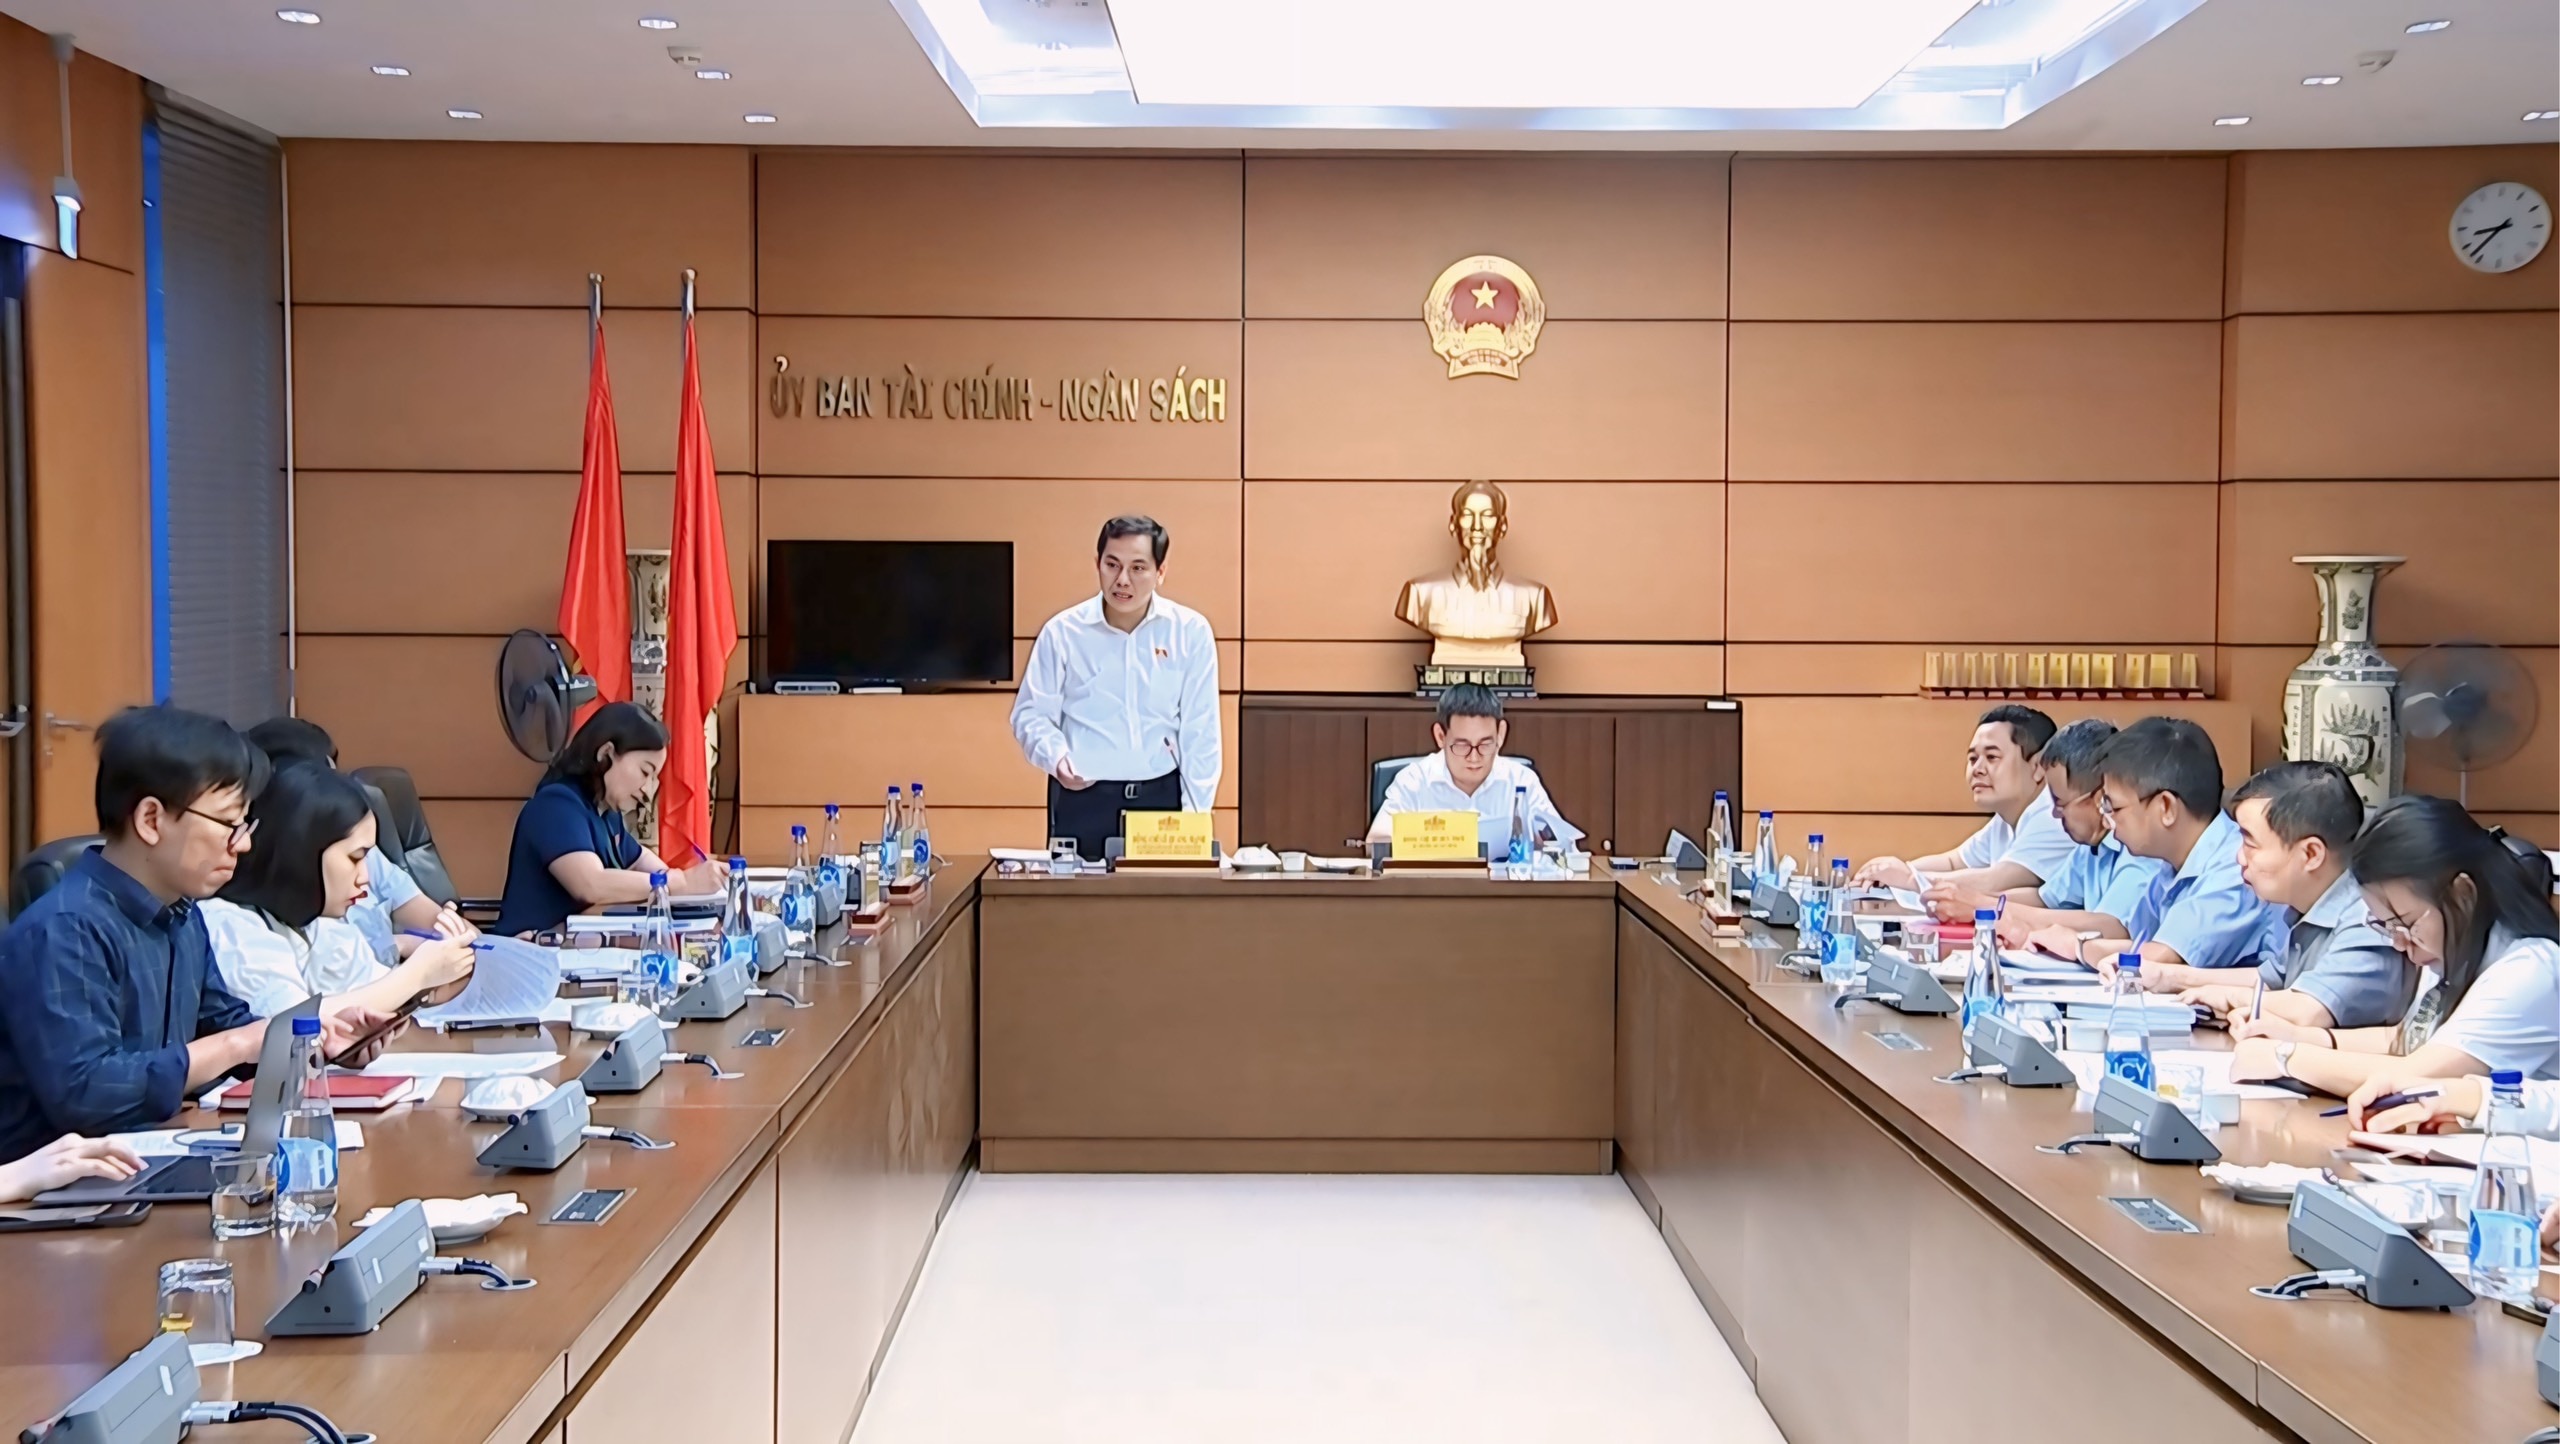 Toàn cảnh phiên họp giữa Thường trực Ủy ban Tài chính - Ngân sách và lãnh đạo Bộ Tài chính - Ảnh: Hồ Long